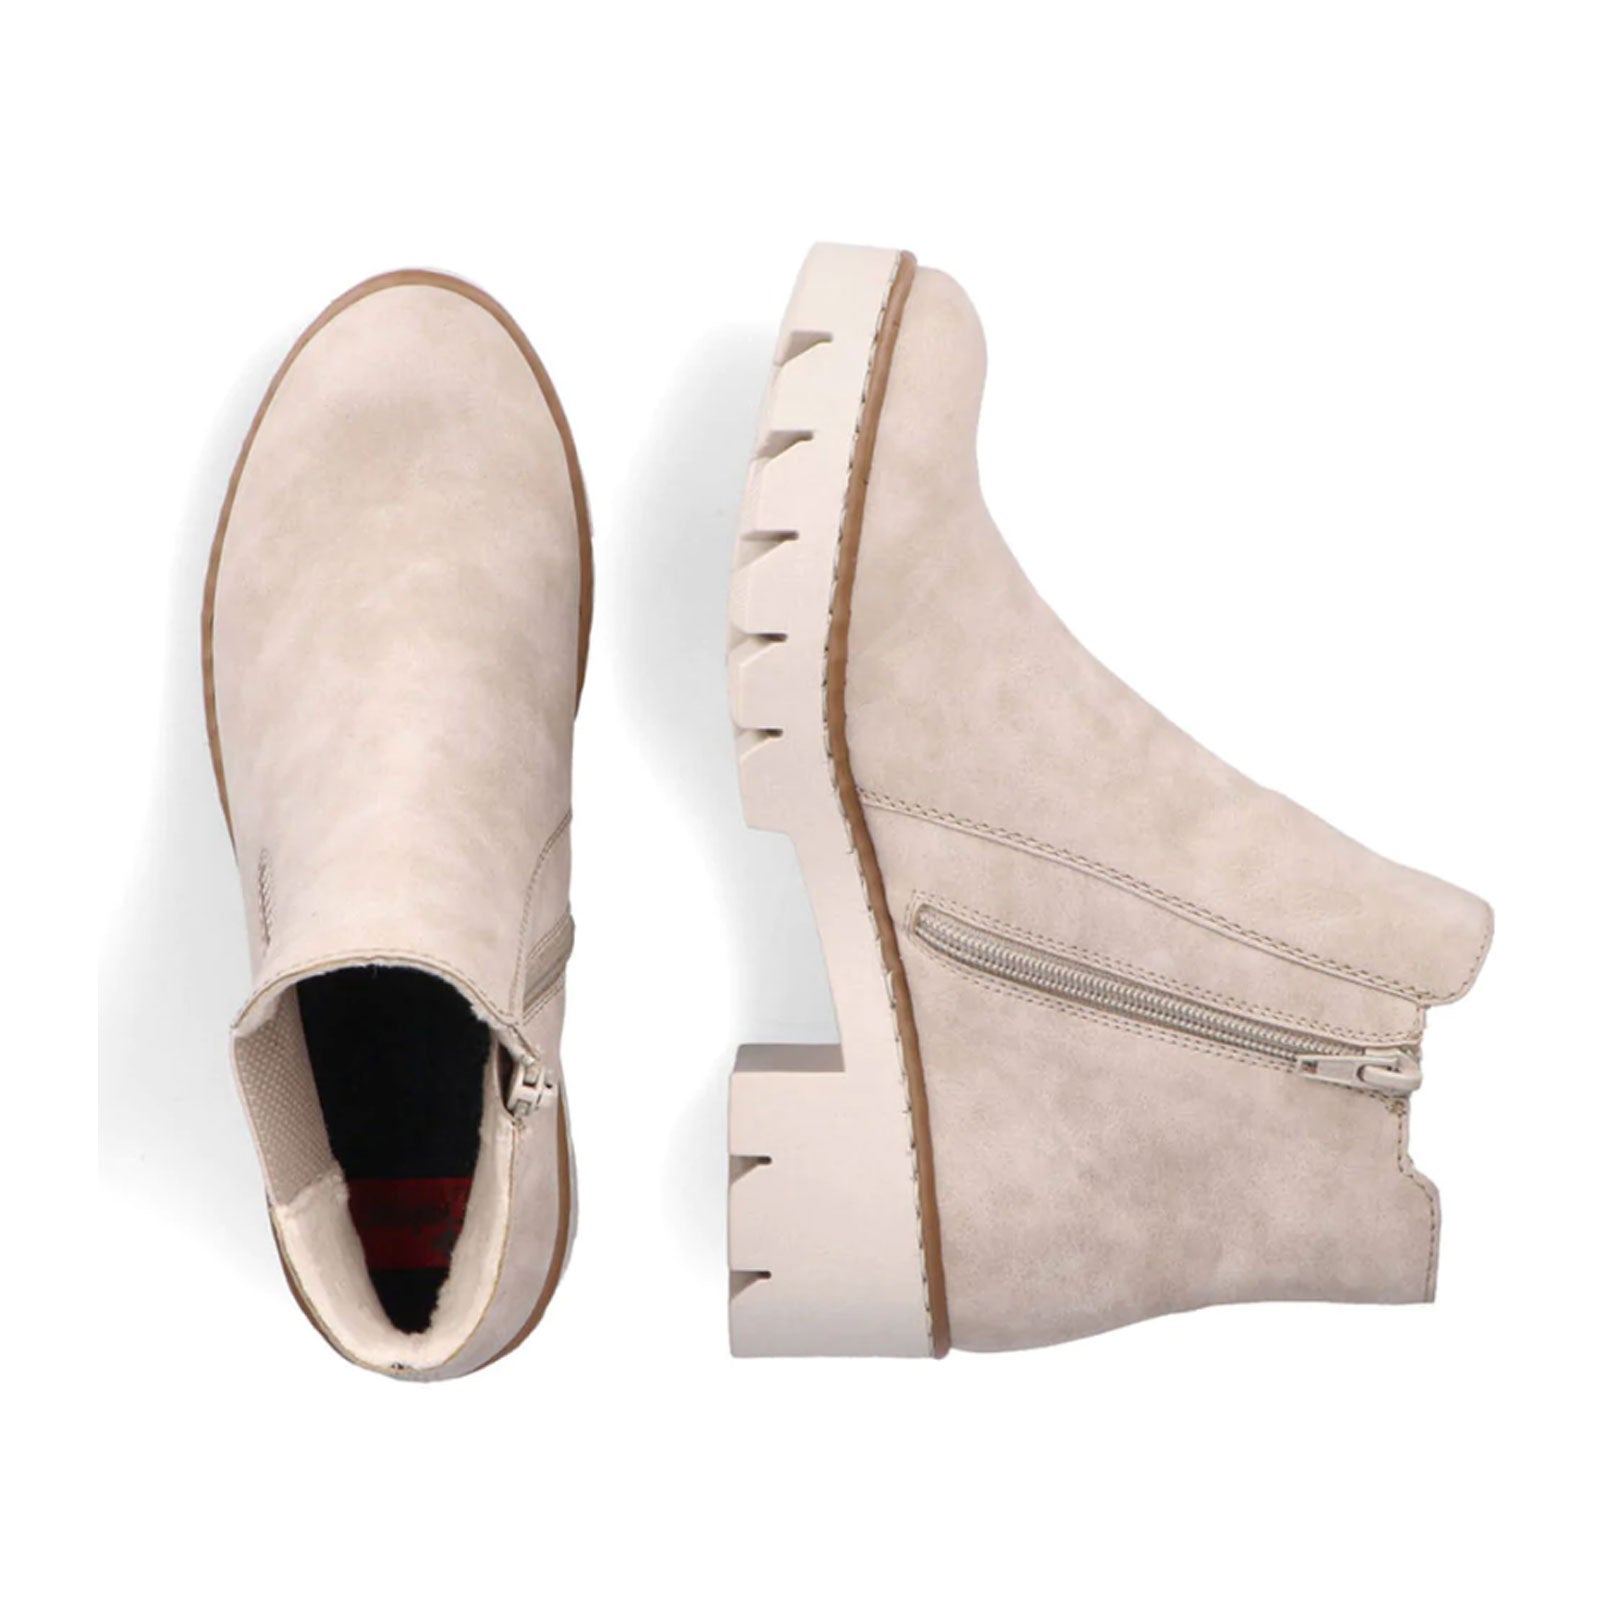 Autonomi Asien Summen Rieker Shoes & Boots - The Heel Shoe Fitters